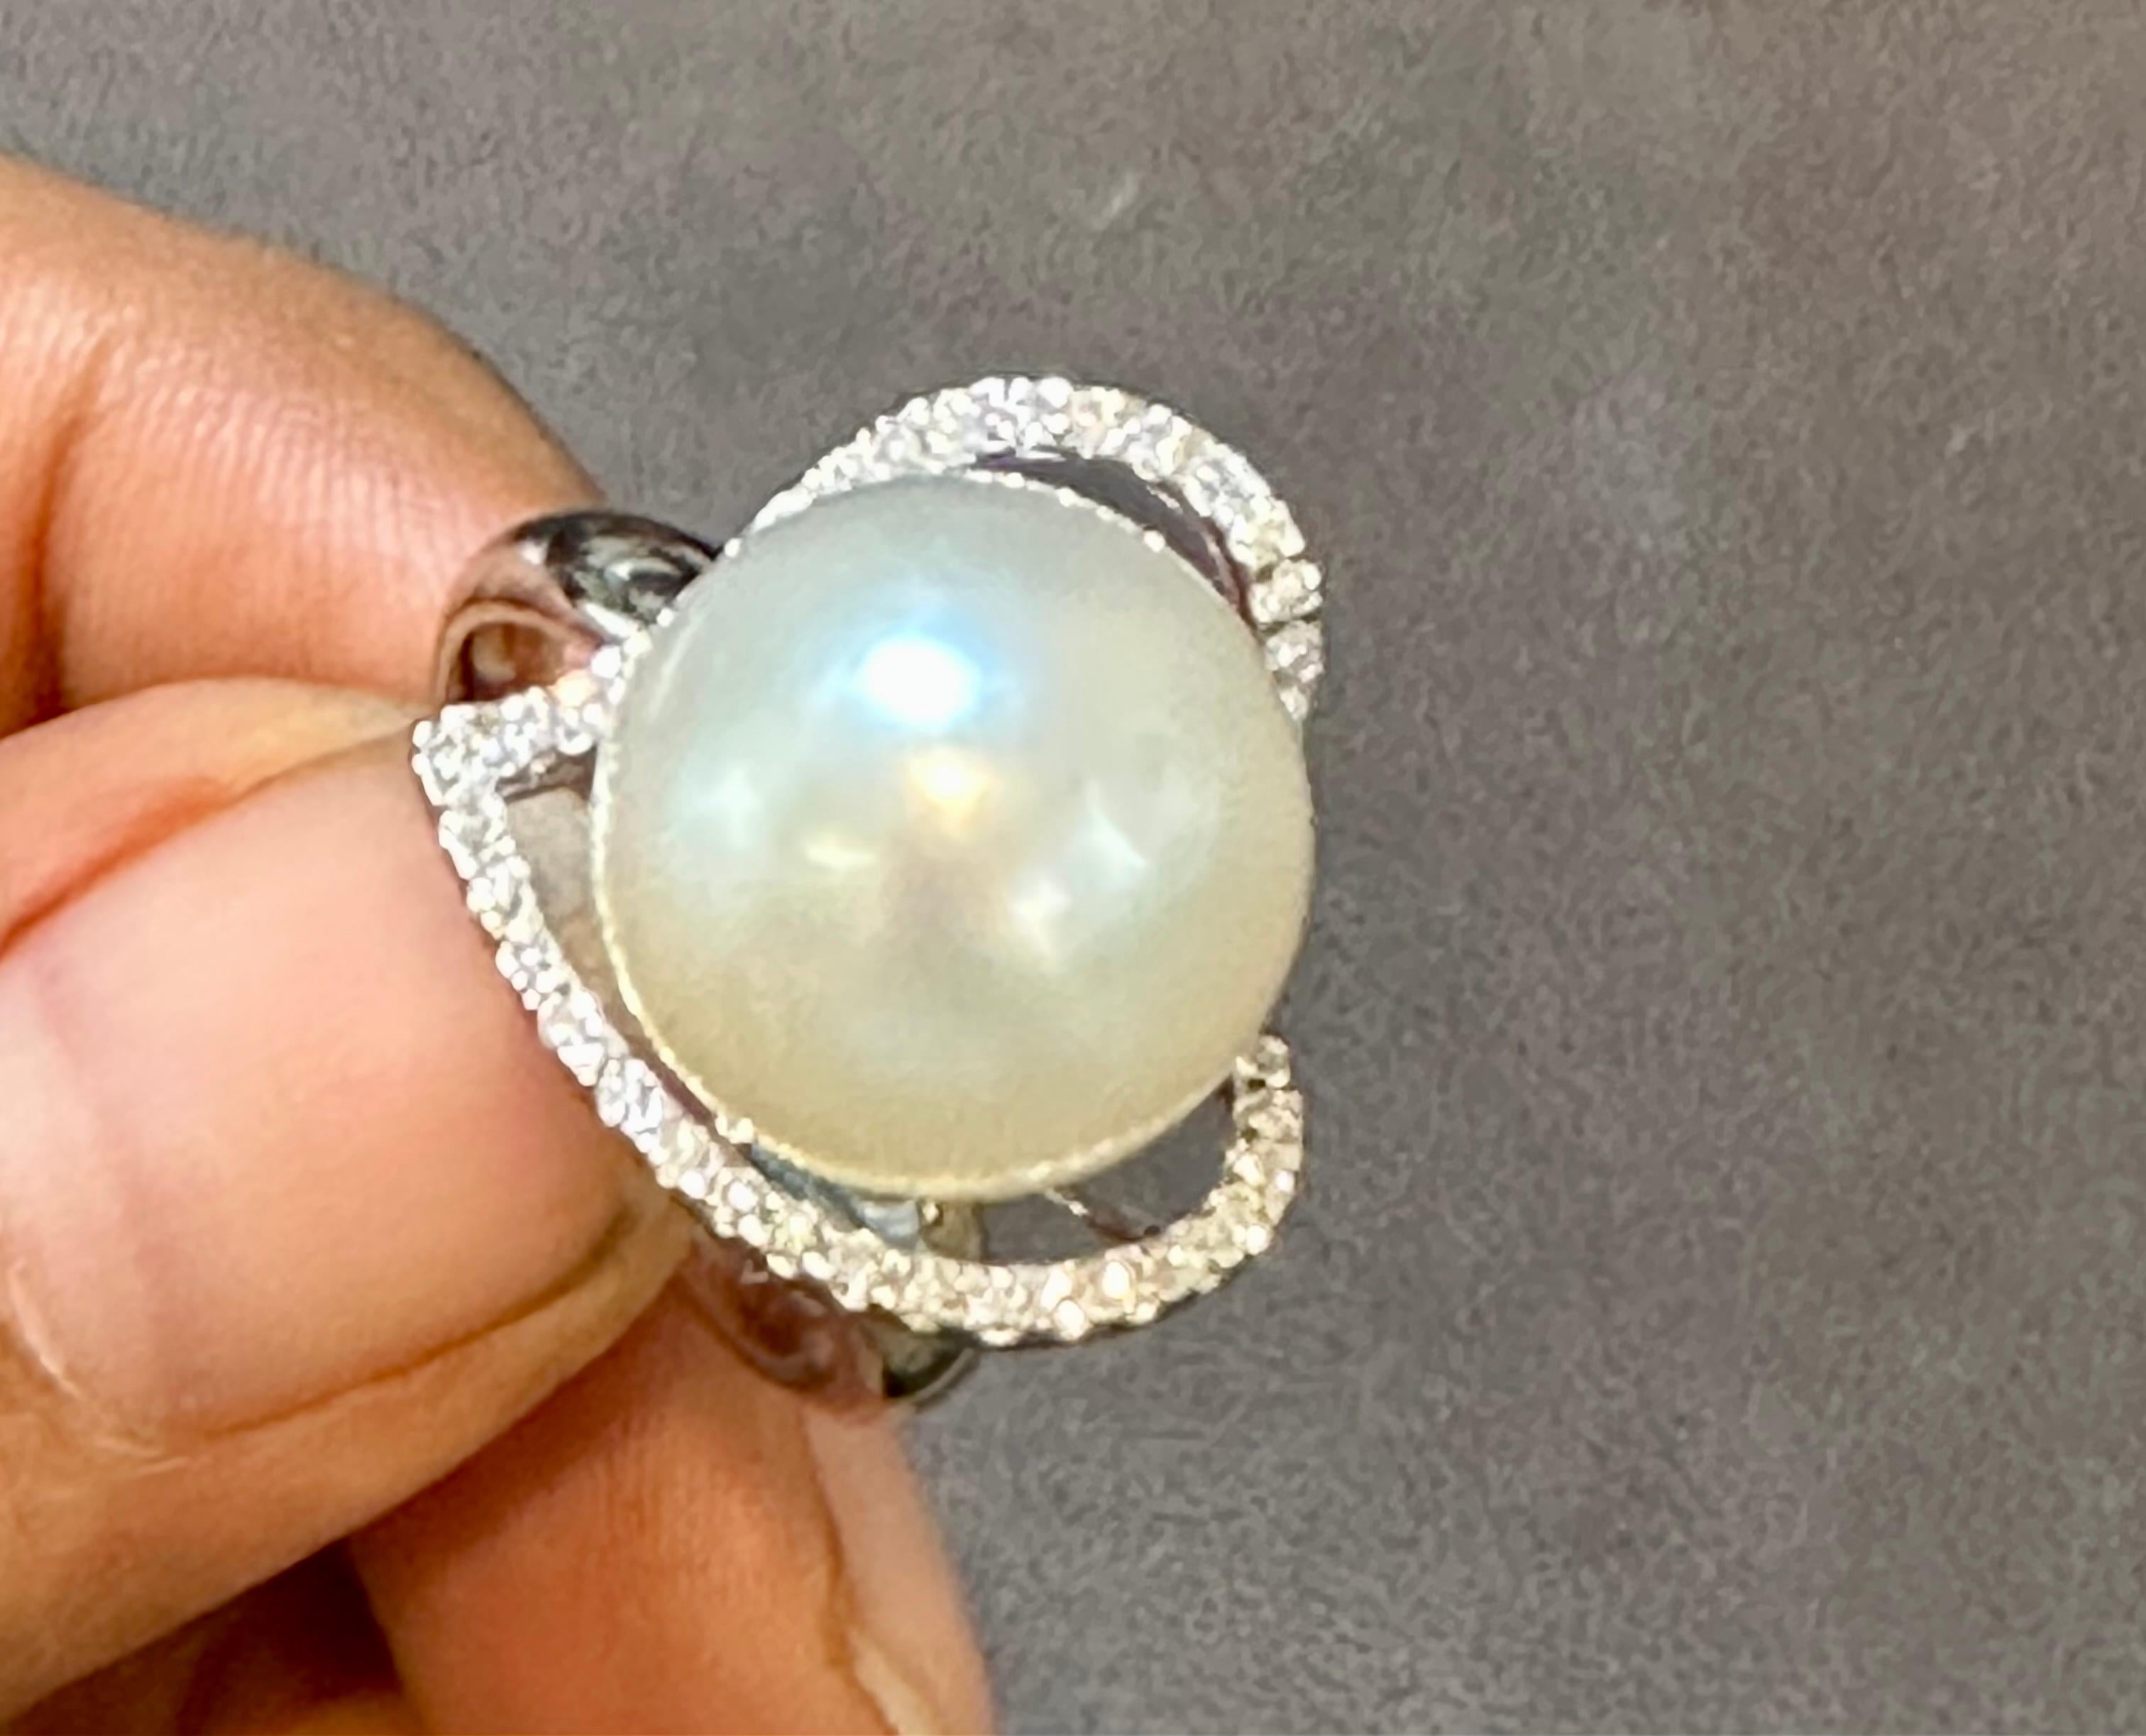 Voici l'exquise bague en forme de cœur de 14 mm en perles blanches rondes des mers du Sud et diamants, une pièce vintage fabriquée en or blanc 18 carats. Cette superbe bague de cocktail met en valeur une magnifique perle de culture des mers du Sud